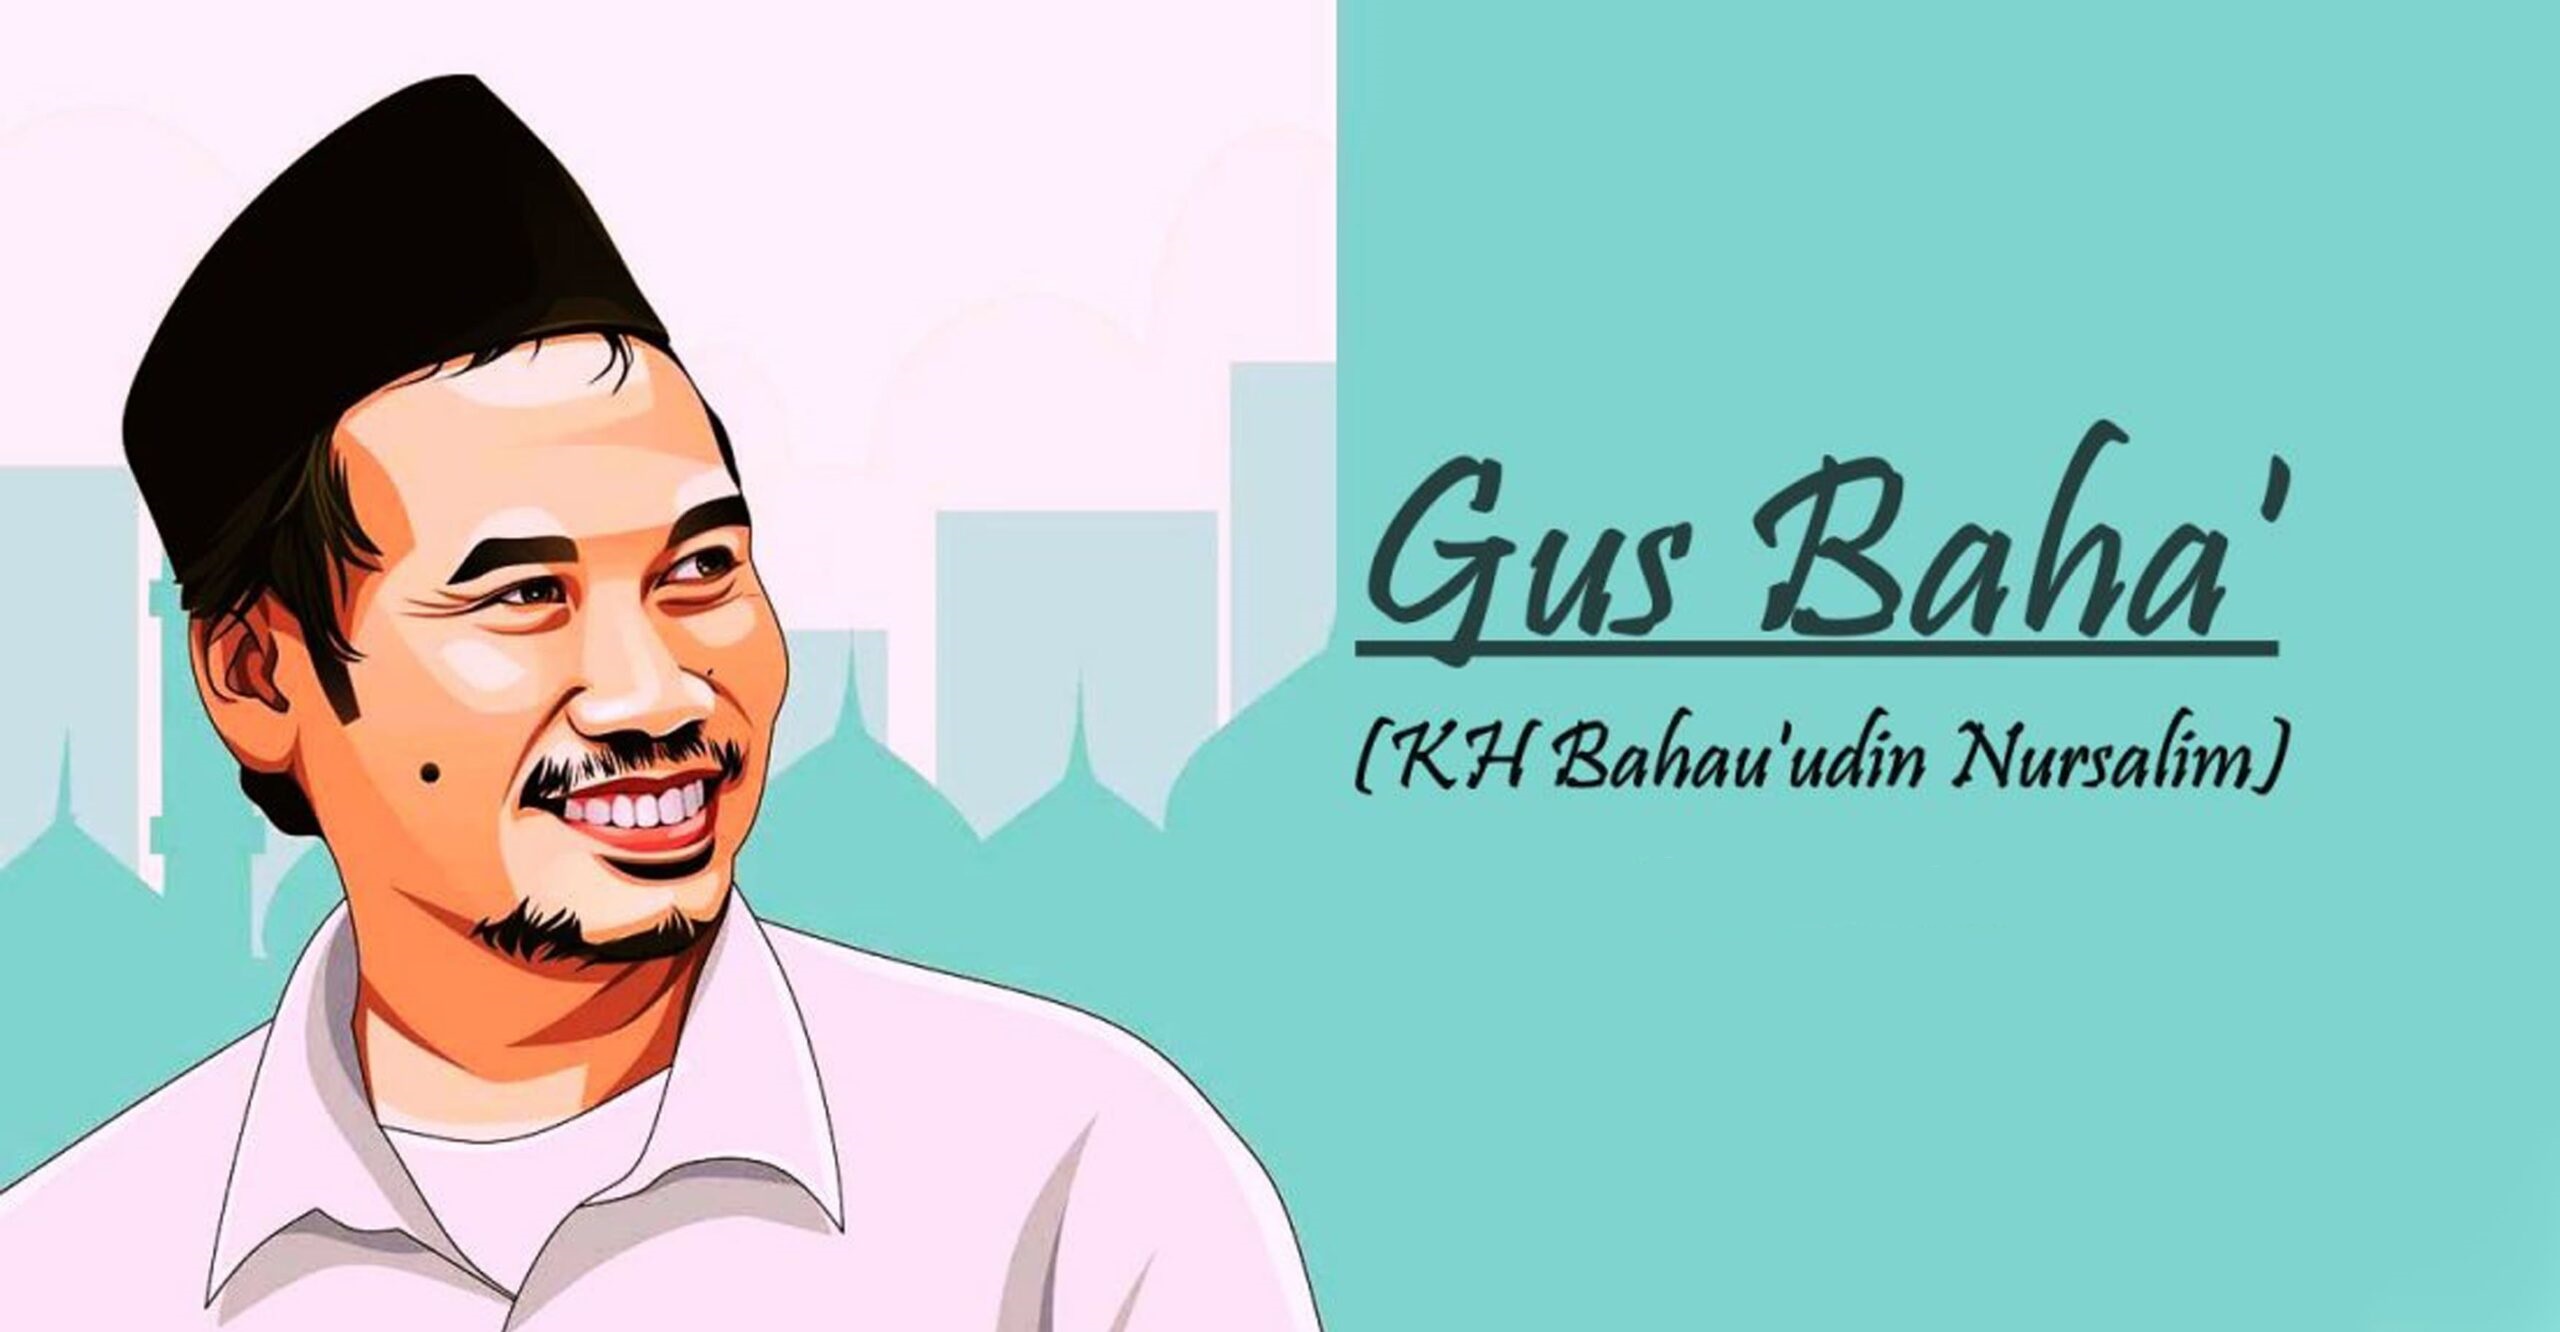 Ceramah Gus Baha (KH. Ahmad Bahauddin Nursalim)